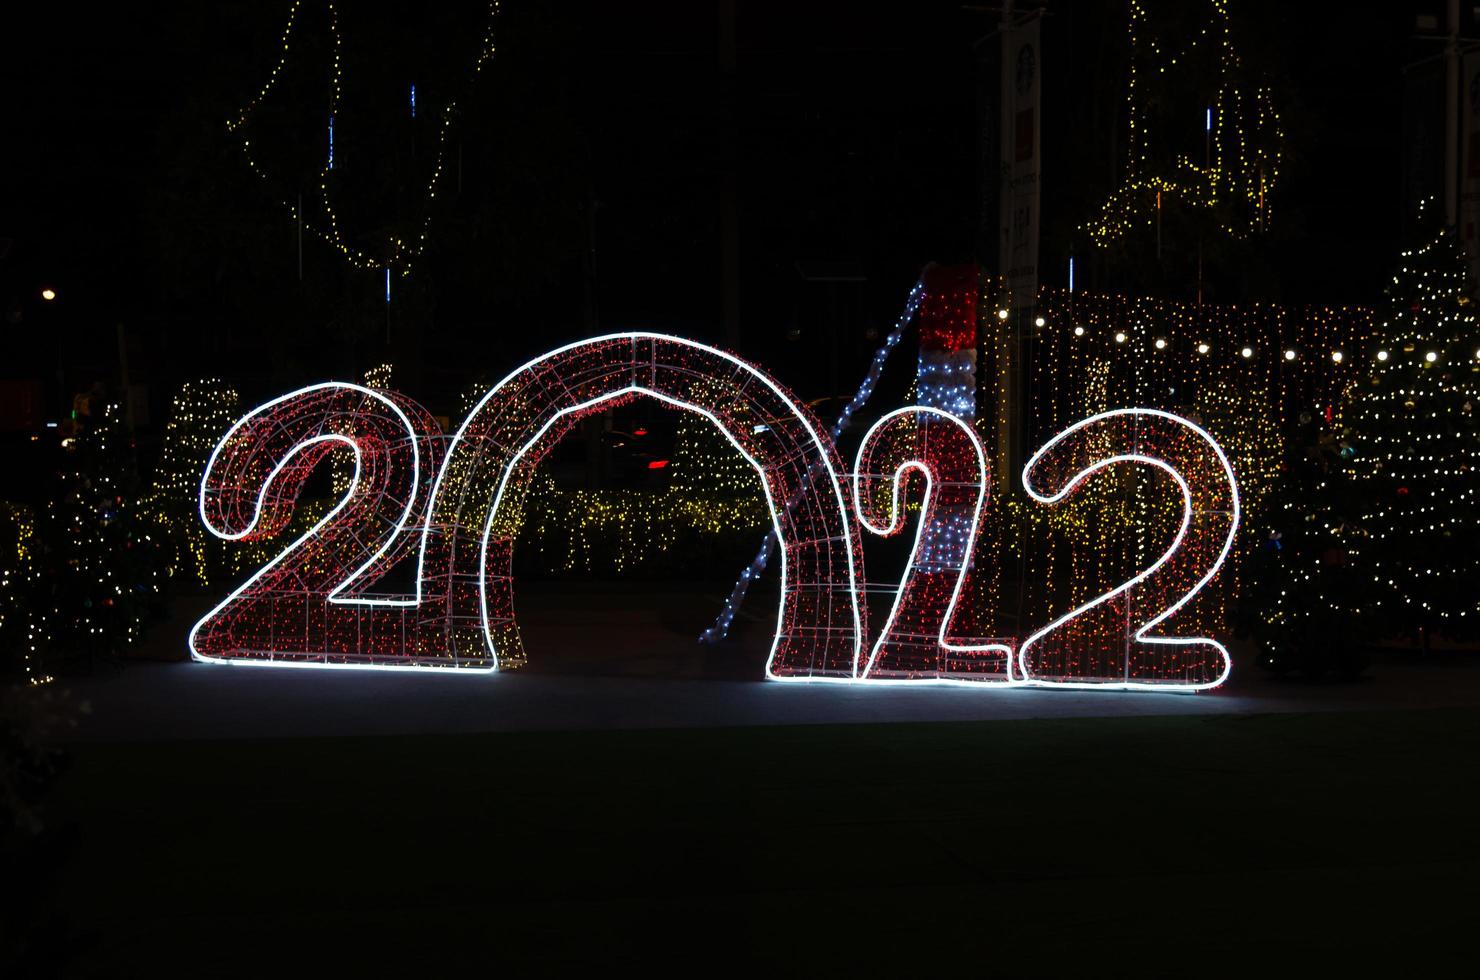 gott nytt år 2022 festliga ljus. kopiera utrymme bakgrund. foto